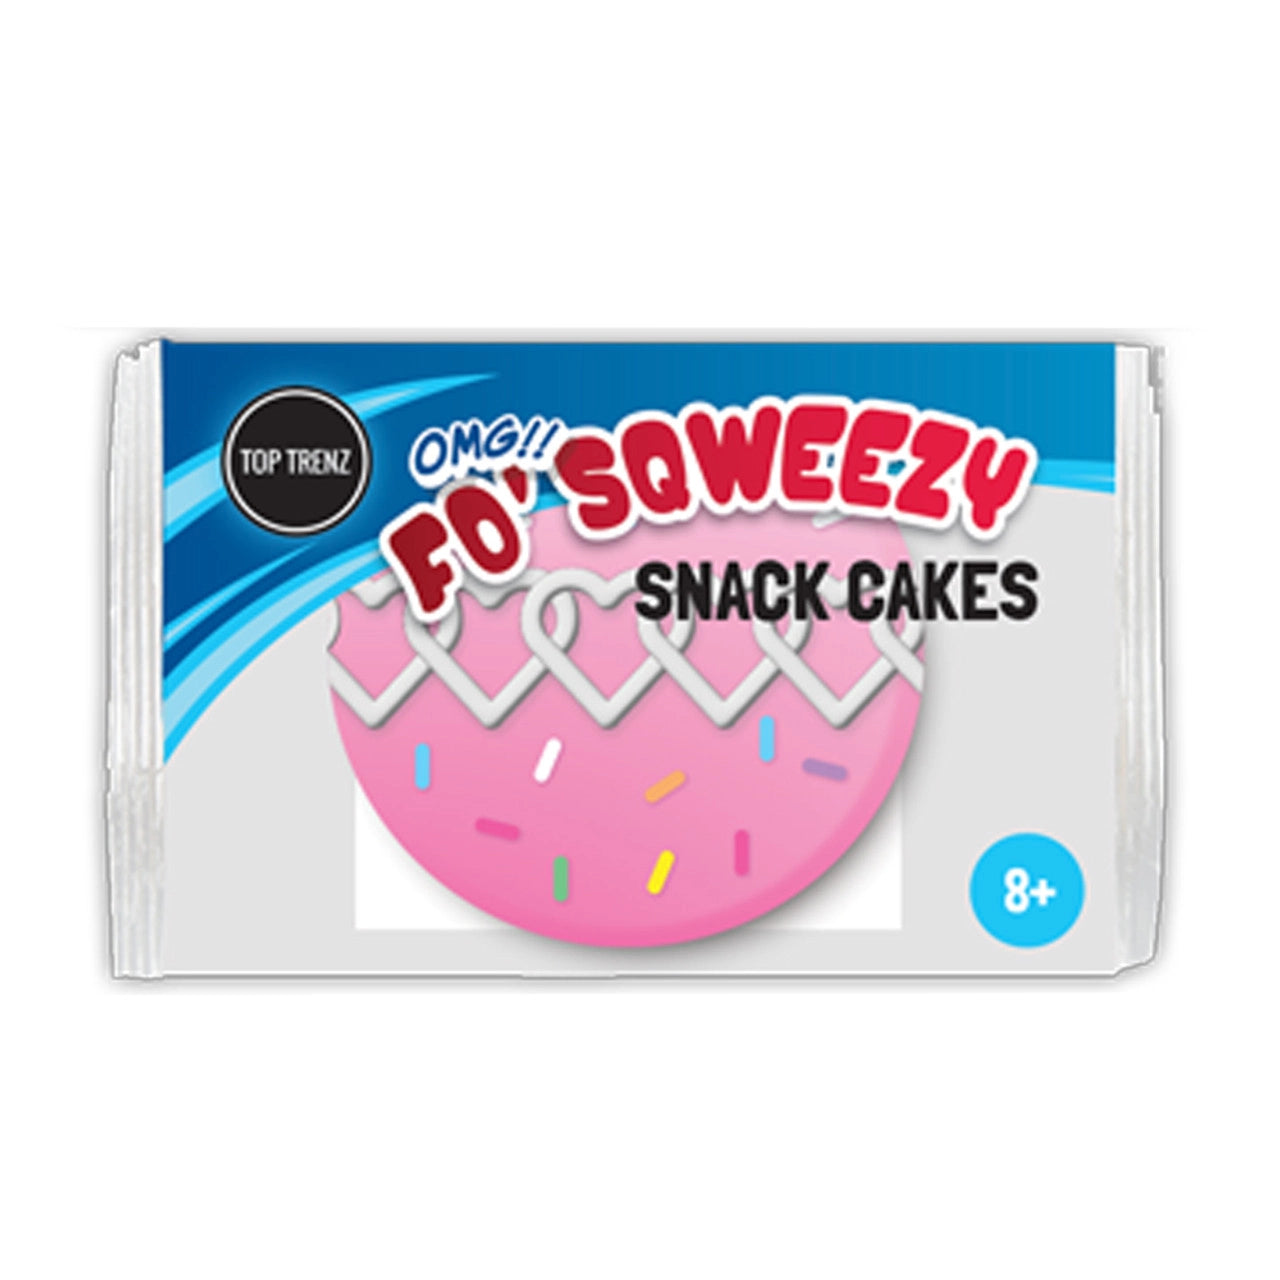 Top Trenz OMG Fo' Sqweezy Snack Cakes Edition - Cupcake-Top Trenz-Little Giant Kidz